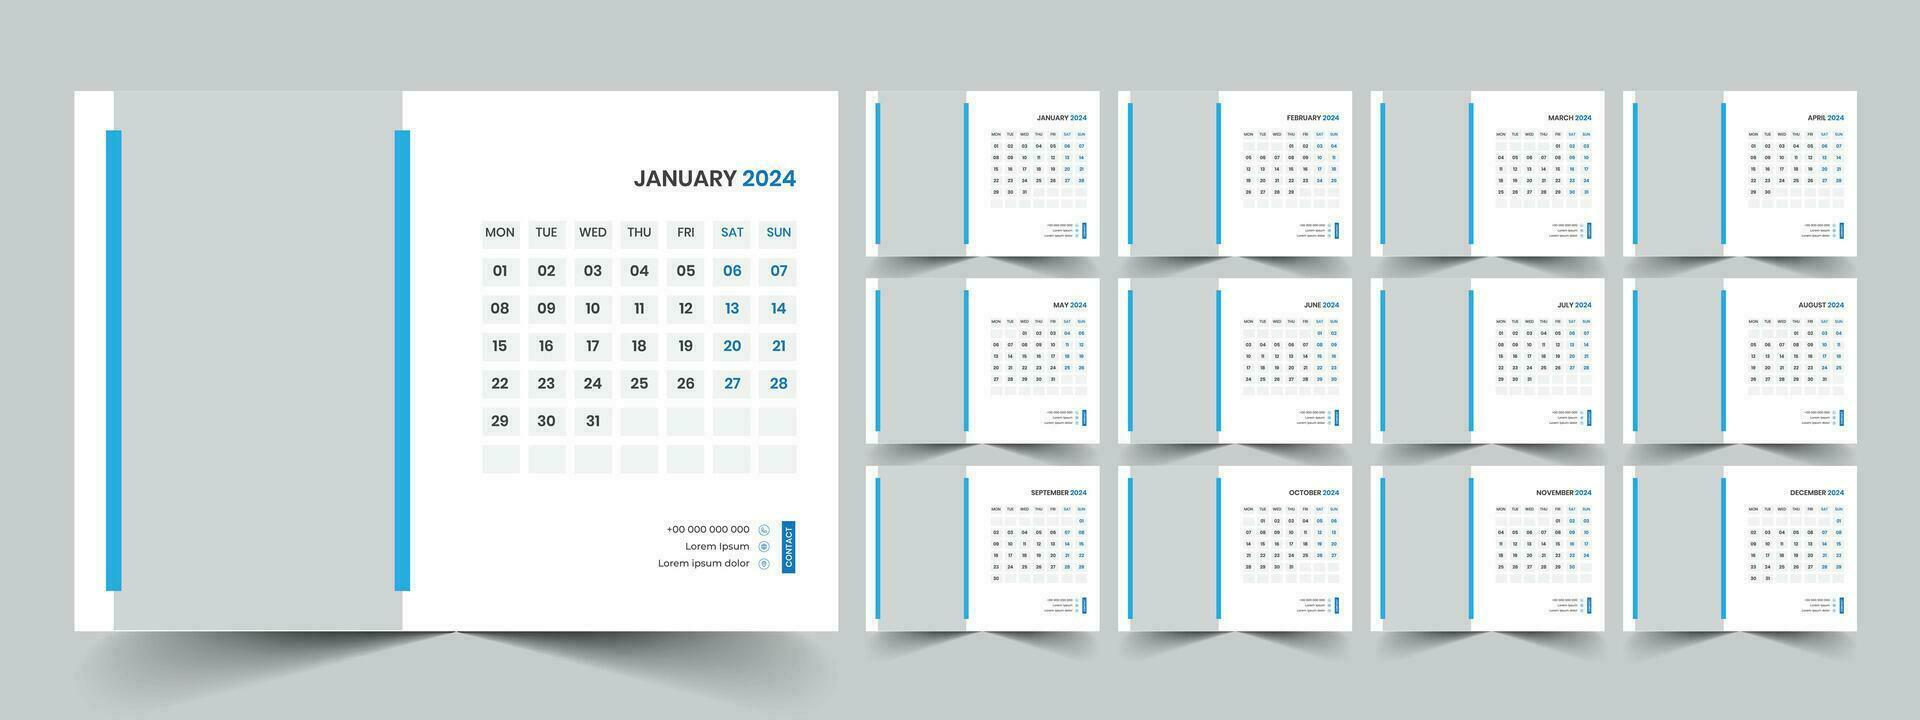 kalender 2024 planerare företags- mall design uppsättning. vecka börjar på måndag. mall för årlig kalender 2024 vektor